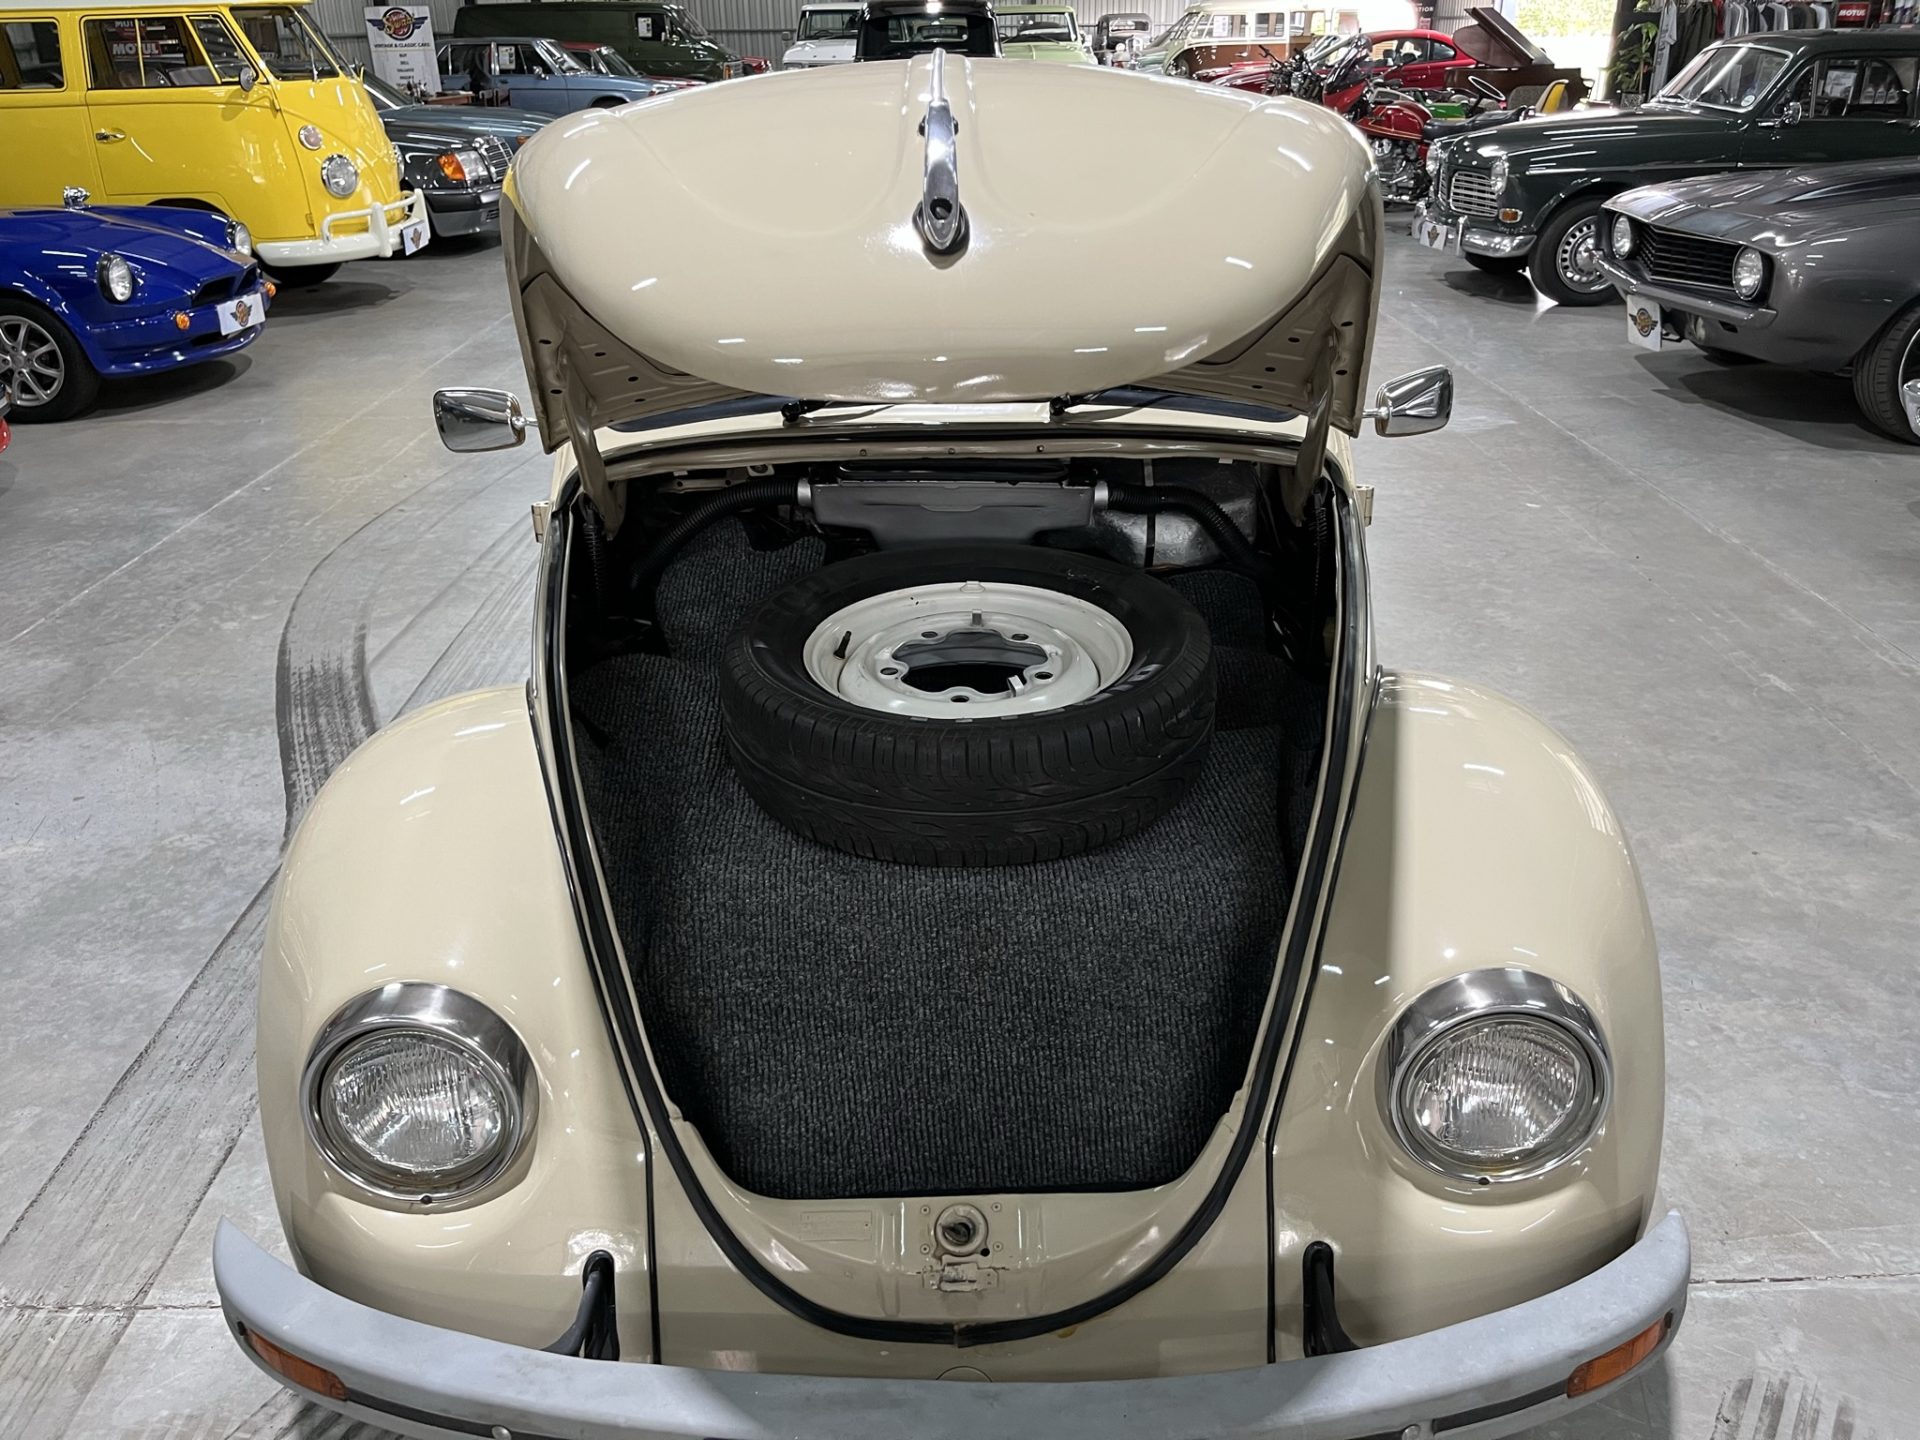 1975 Volkswagen Beetle 1600